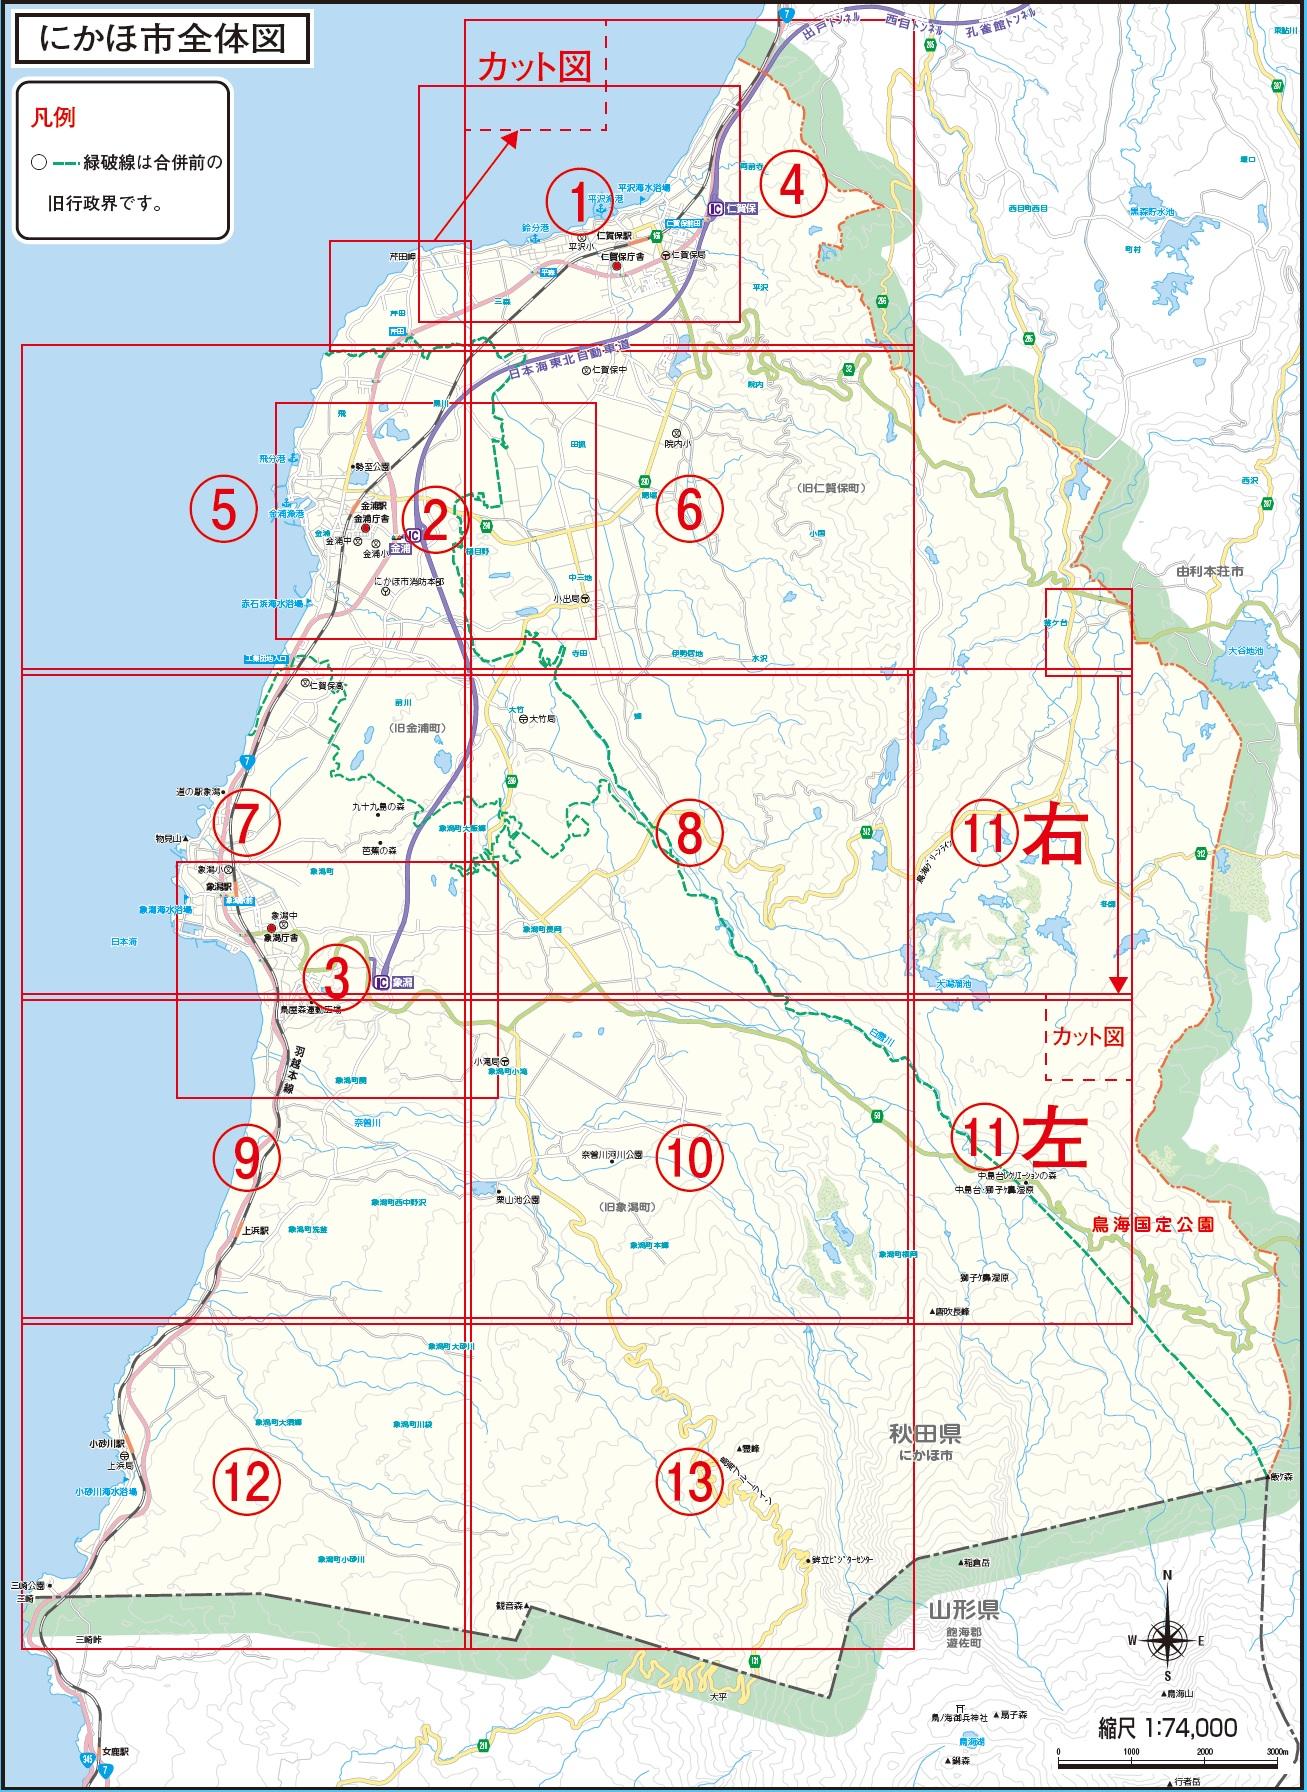 にかほ市土砂災害警戒地域を表した全体地図詳細は以下